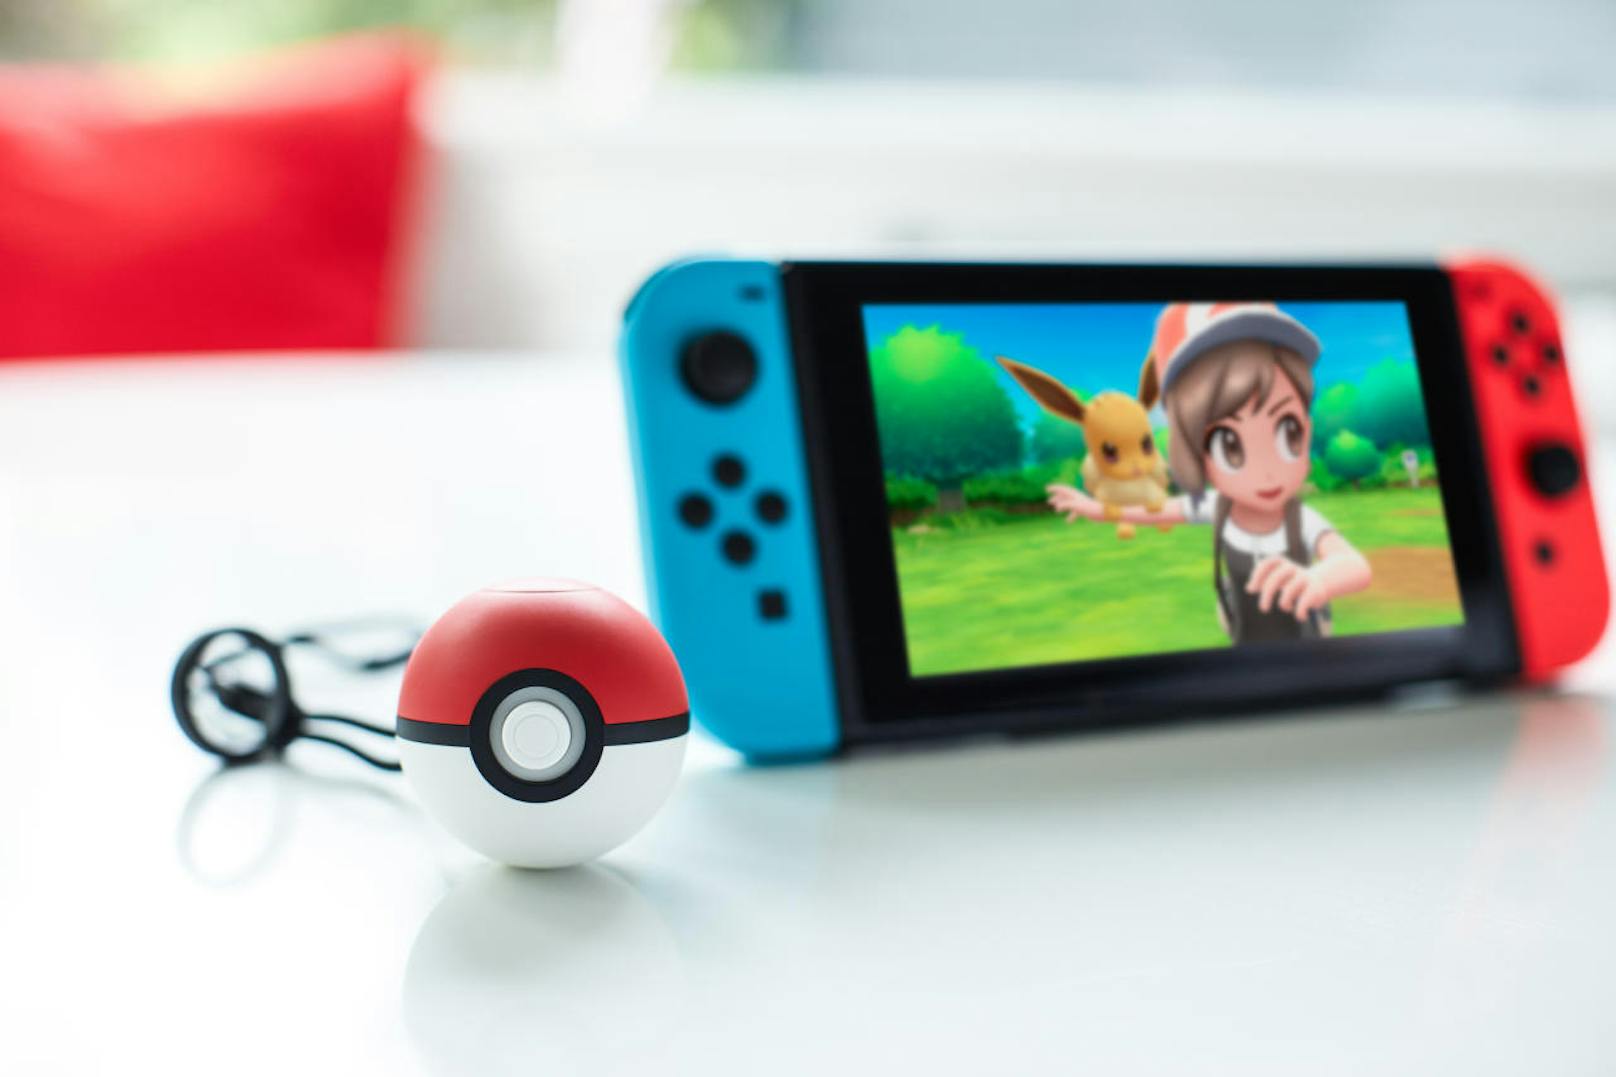 Bevor die nächste Pokémon-Generation im nächsten Jahr auf Nintendo Switch Premiere feiert, entführen die Entwickler in längst vergangene Tage. Besser gesagt: In den beiden Pokémon-Editionen Lets Go, Pikachu & Evoli geht es in die legendäre Kanto-Region aus den Klassikern Pokémon Rot, Blau und Gelb.